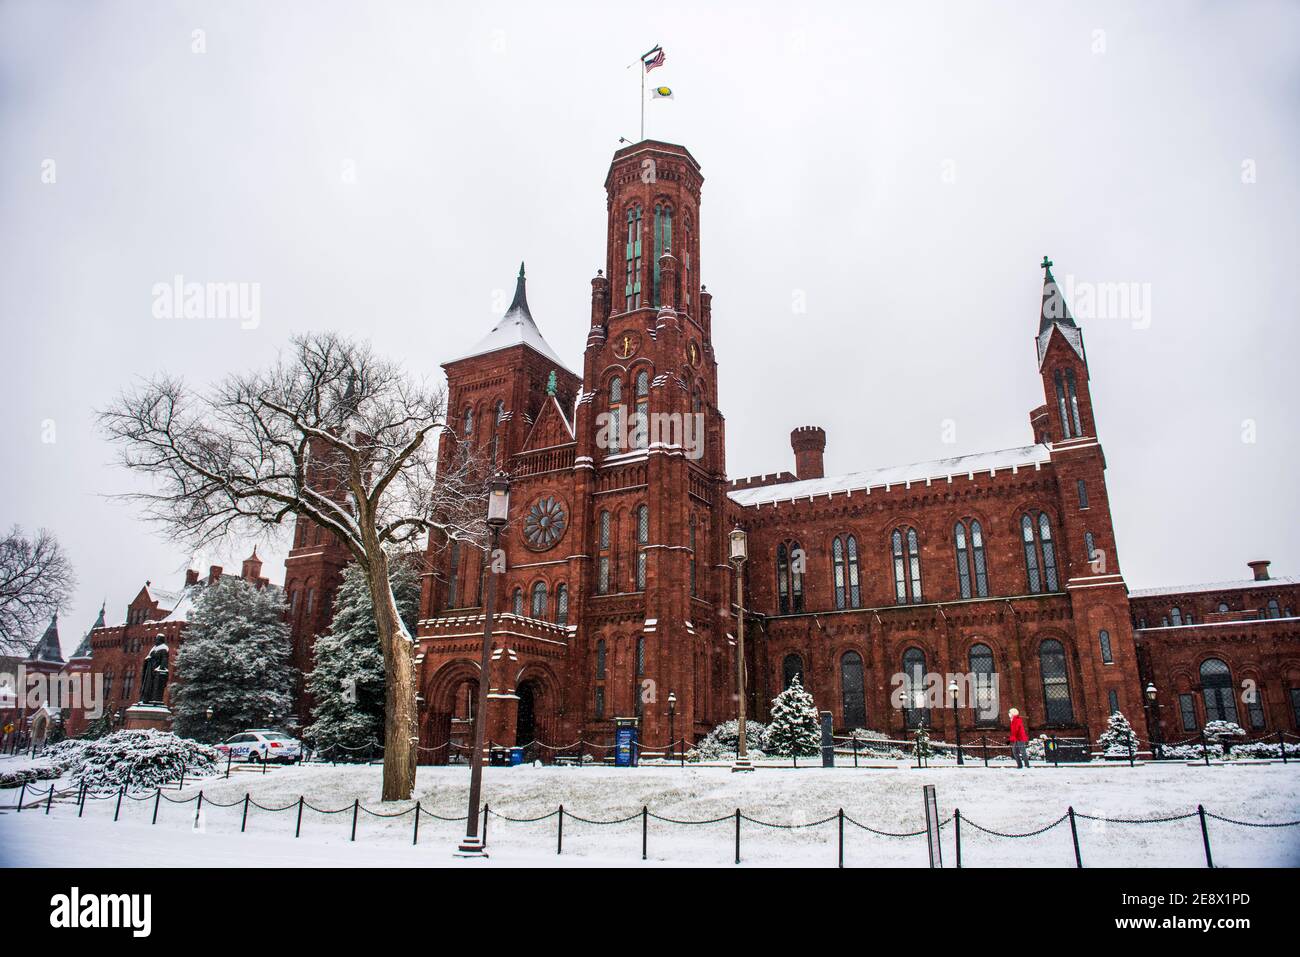 Das Smithsonian Institution Building, auch bekannt als das Schloss, während eines verschneiten Tages in Washington, D.C. Stockfoto